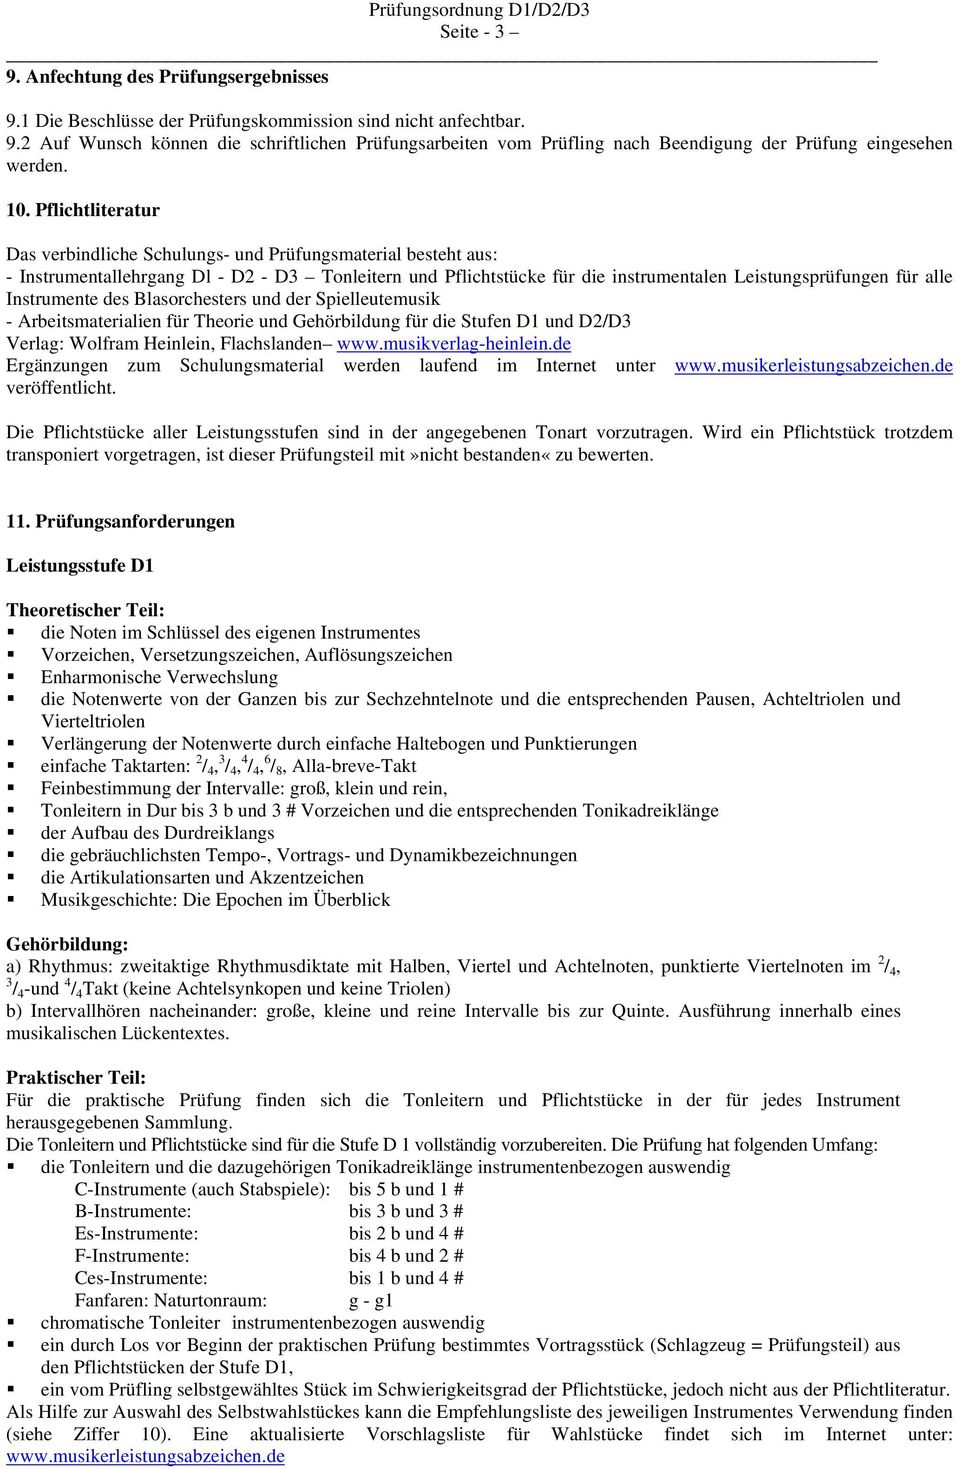 Instrumente des Blasorchesters und der Spielleutemusik - Arbeitsmaterialien für Theorie und Gehörbildung für die Stufen D1 und D2/D3 Verlag: Wolfram Heinlein, Flachslanden www.musikverlag-heinlein.